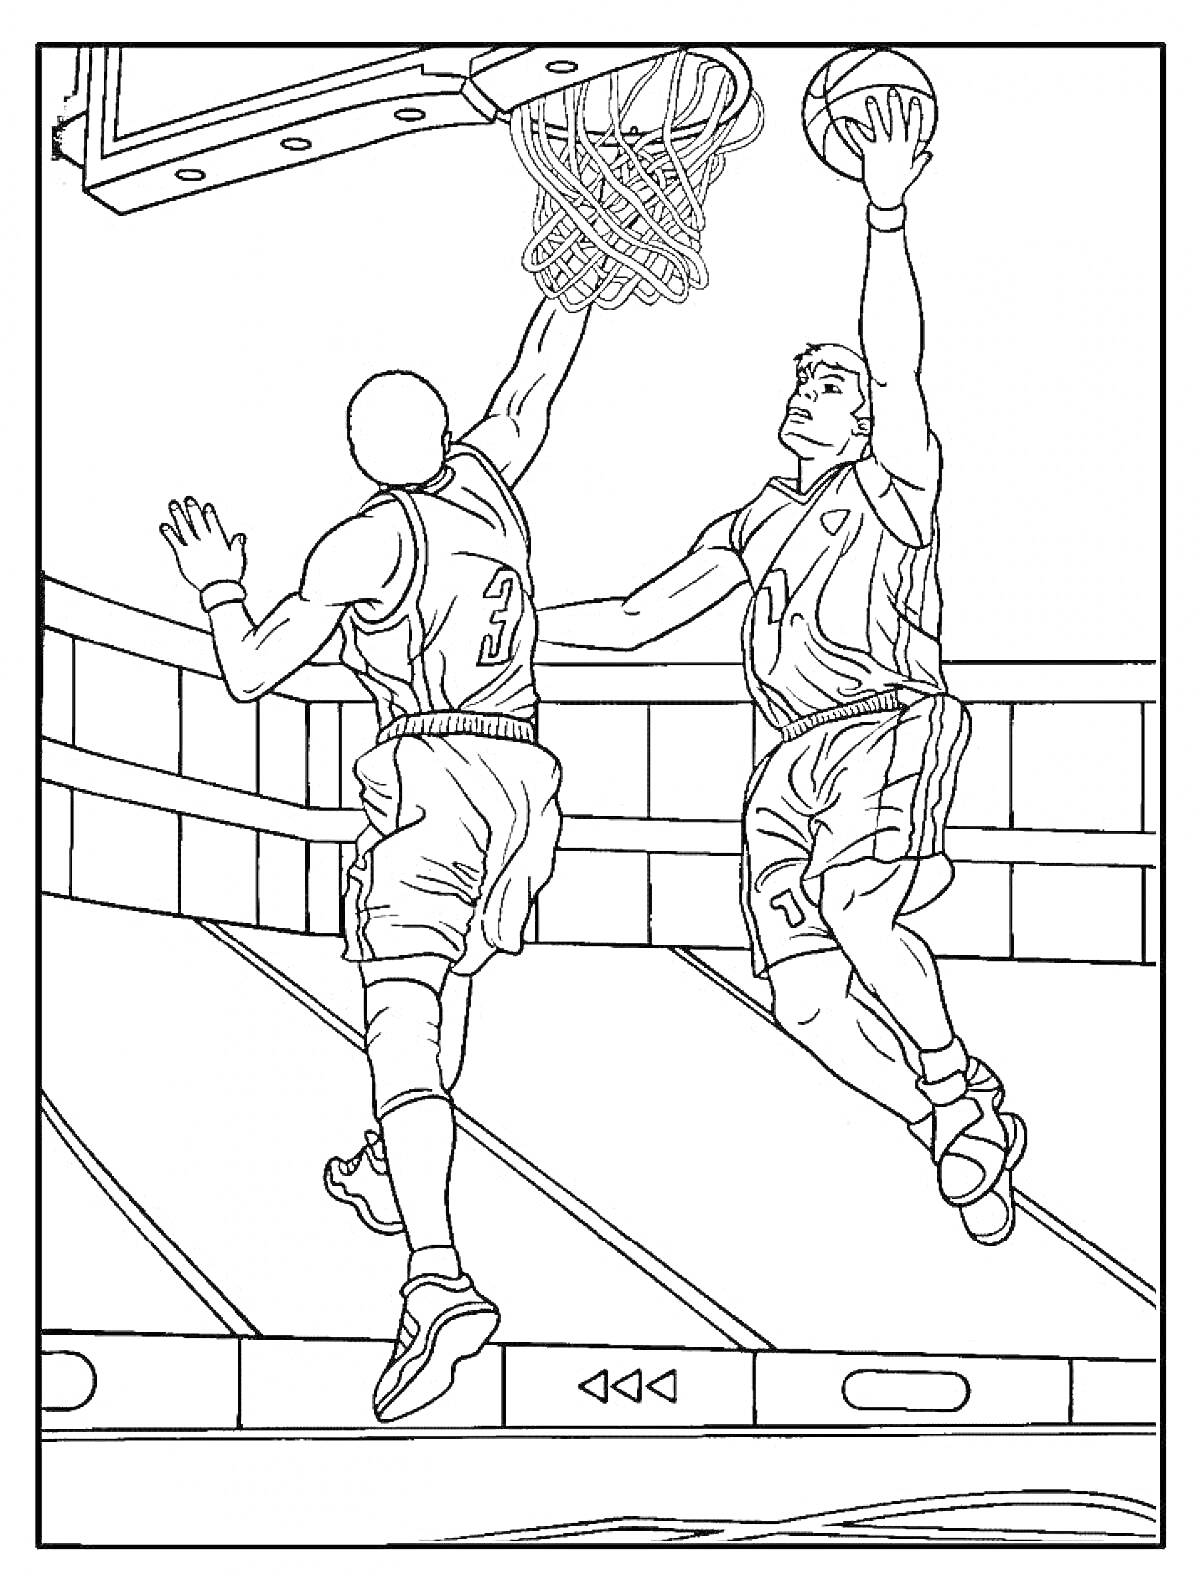 Раскраска Два баскетболиста, сценка турнира, забивание мяча в корзину, баскетбольная площадка с трибунами